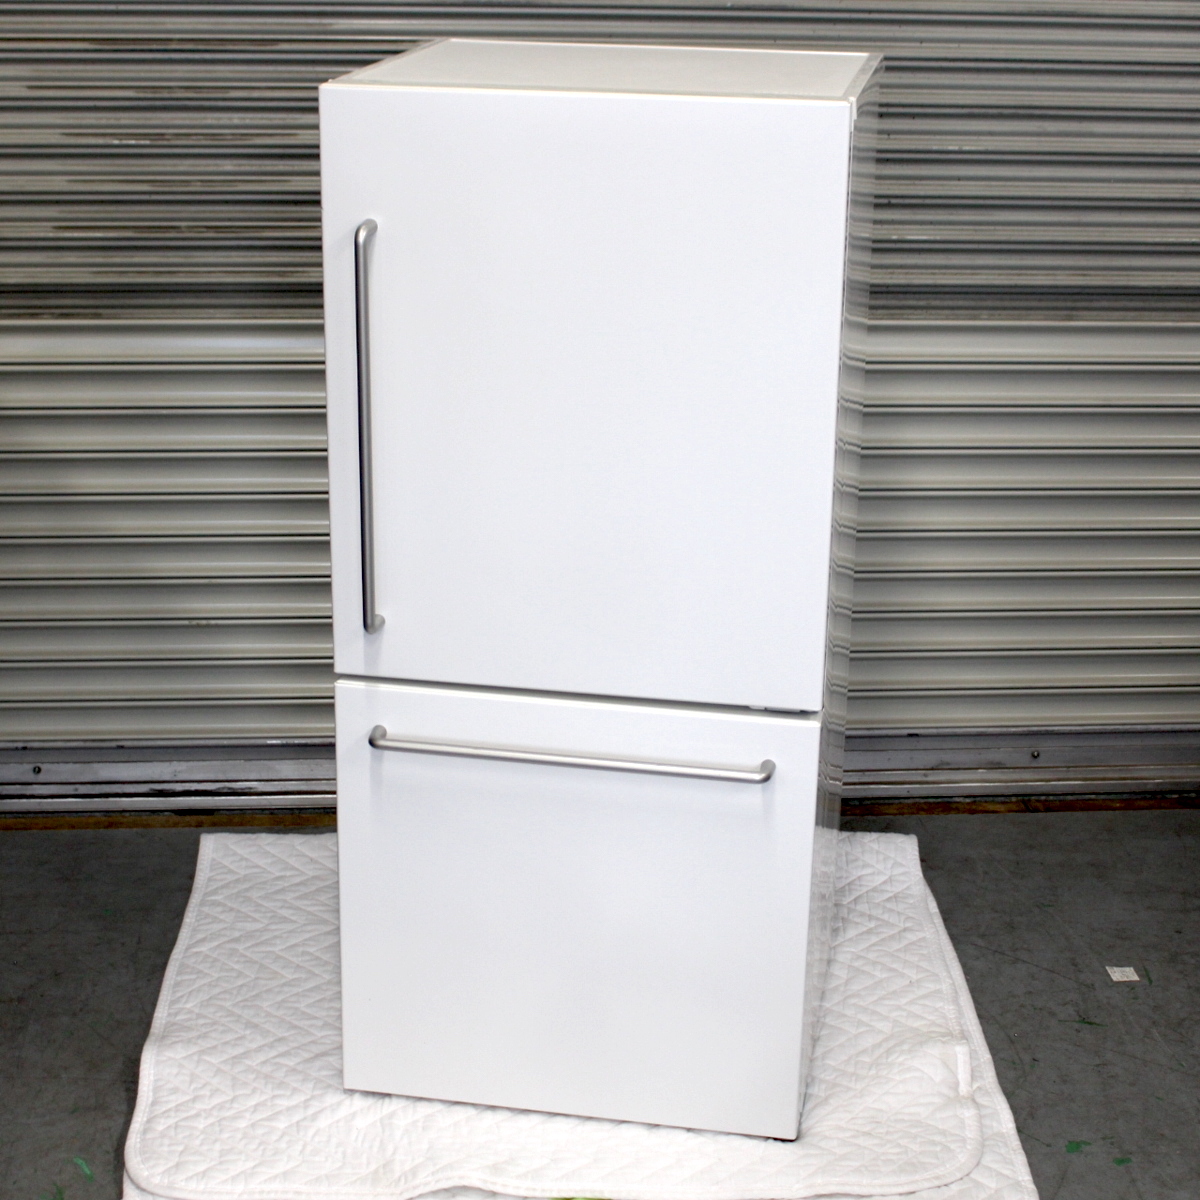 東京都豊島区にて 無印良品 冷蔵庫 MJ-R16A-2 2018年製 を出張買取させて頂きました。